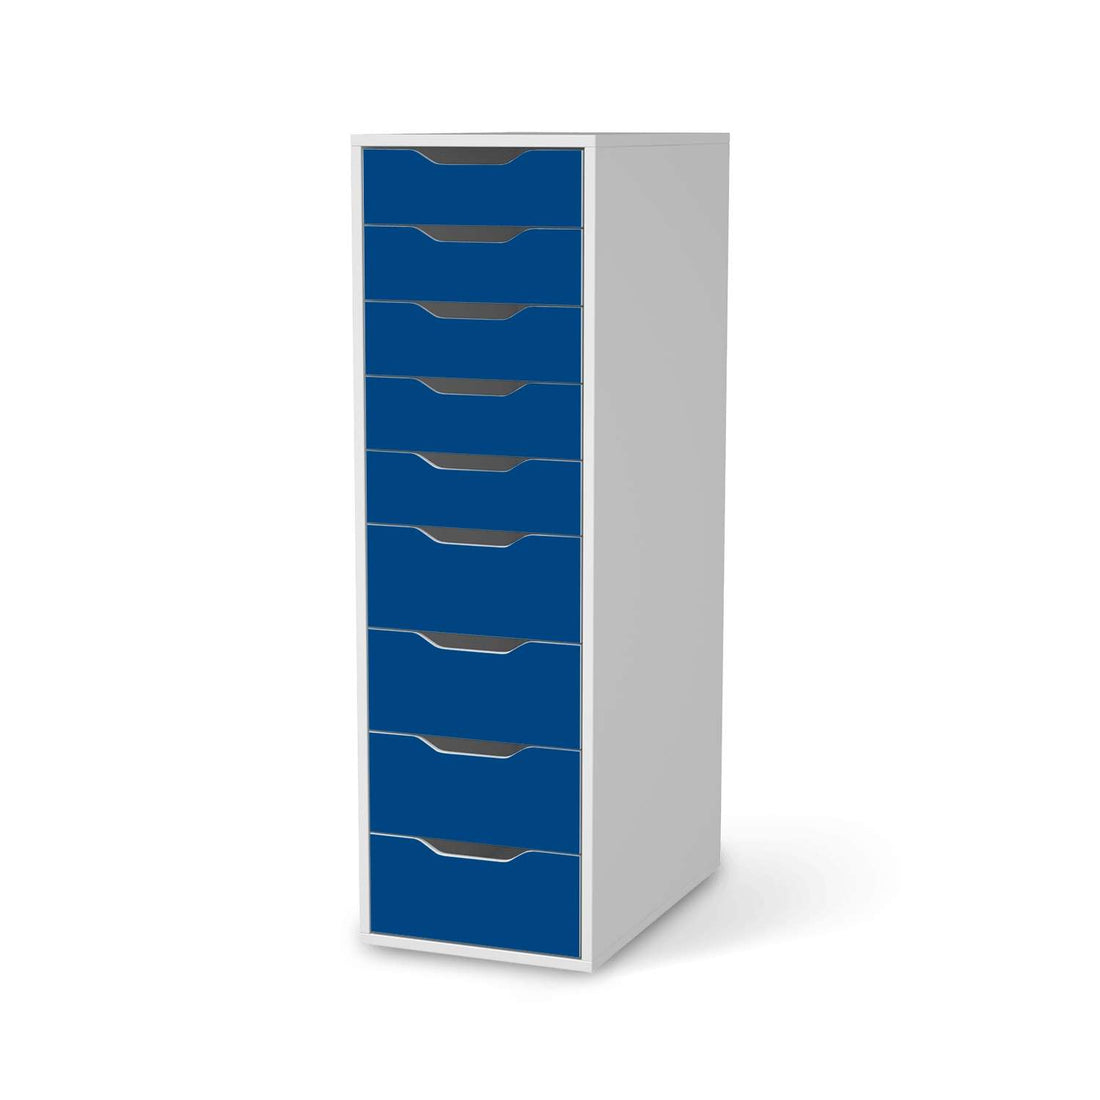 Folie für Möbel Blau Dark - IKEA Alex 9 Schubladen - weiss